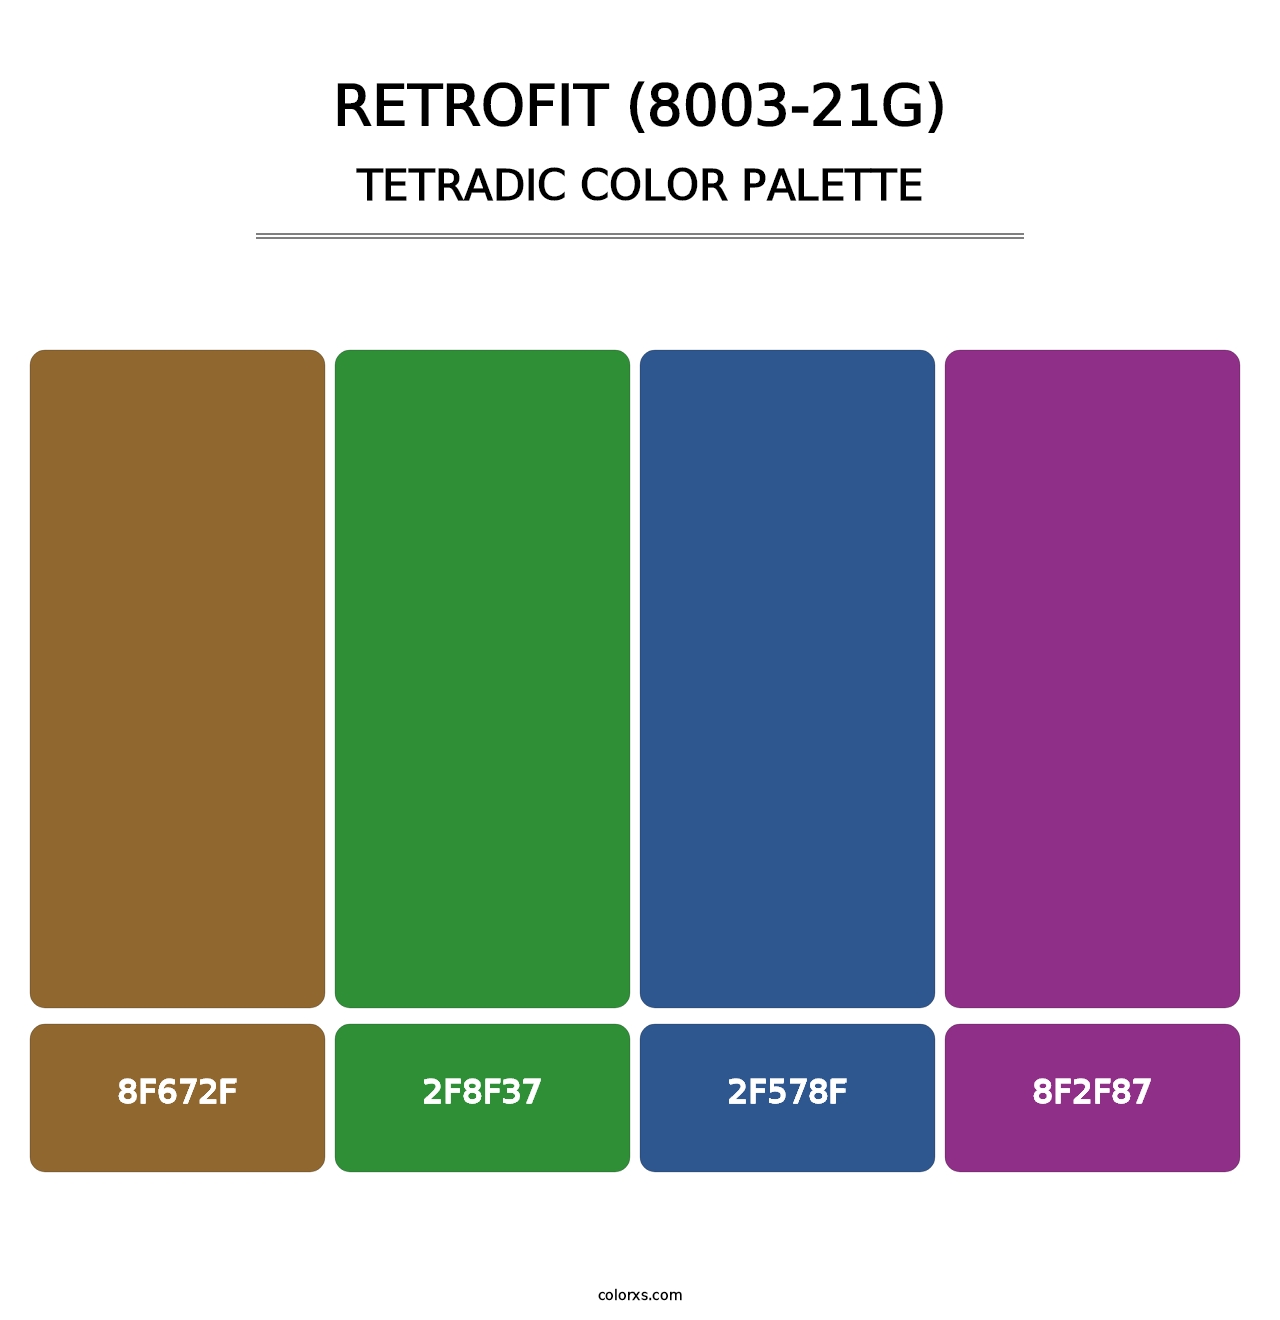 Retrofit (8003-21G) - Tetradic Color Palette